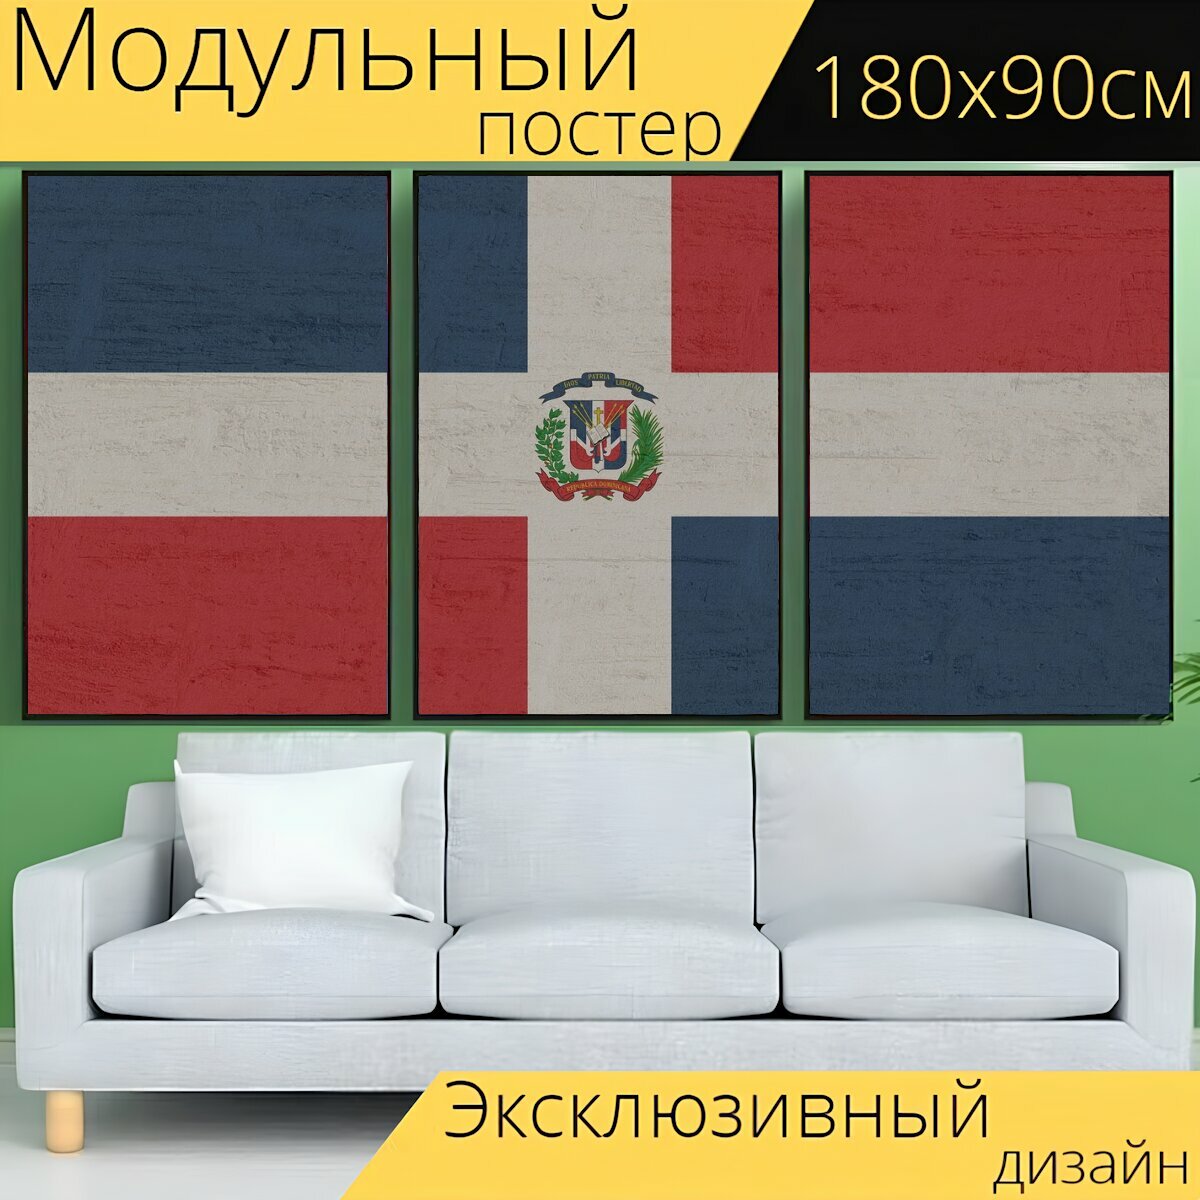 Модульный постер "Доминиканская республика, знамя, флаг" 180 x 90 см. для интерьера